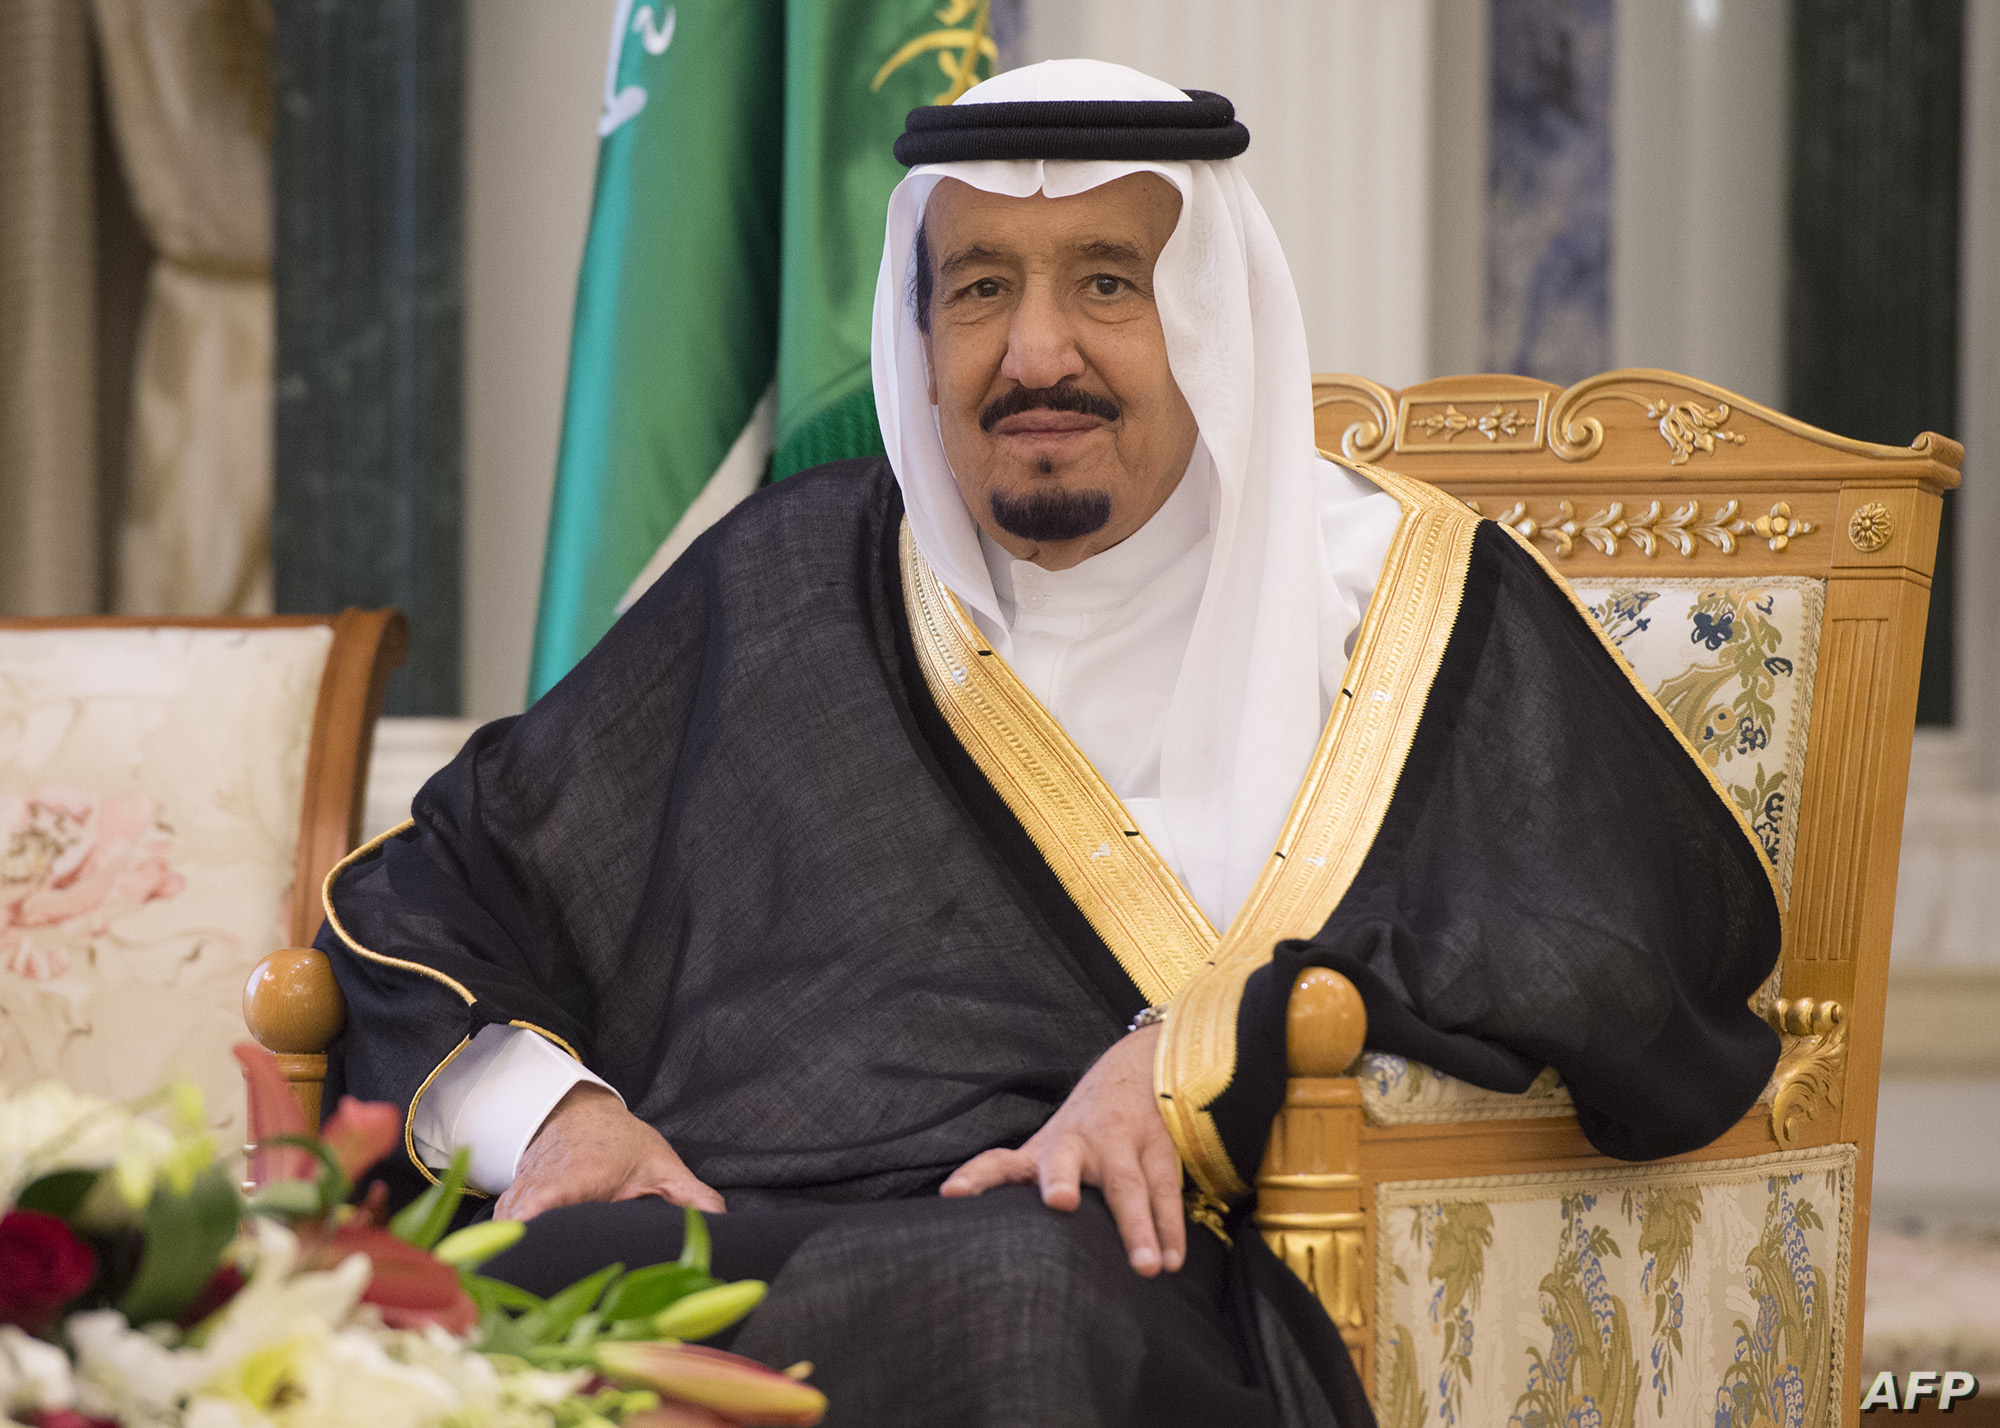 بوابة تواصل مع الملك سلمان بن عبدالعزيز لطلب مساعدات مالية وسداد القروض والديون وغيرها